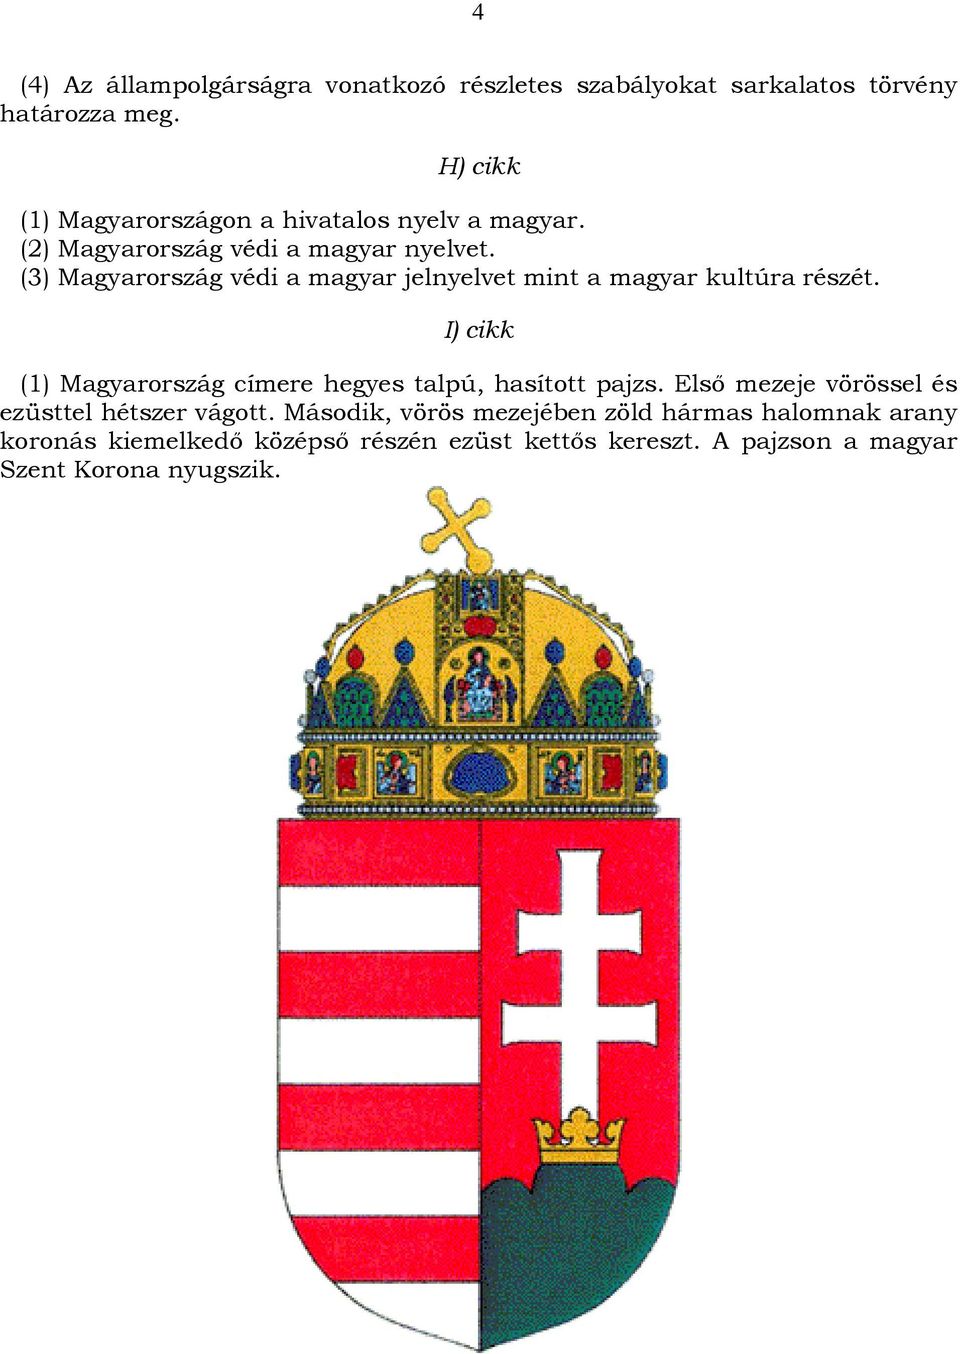 (3) Magyarország védi a magyar jelnyelvet mint a magyar kultúra részét.